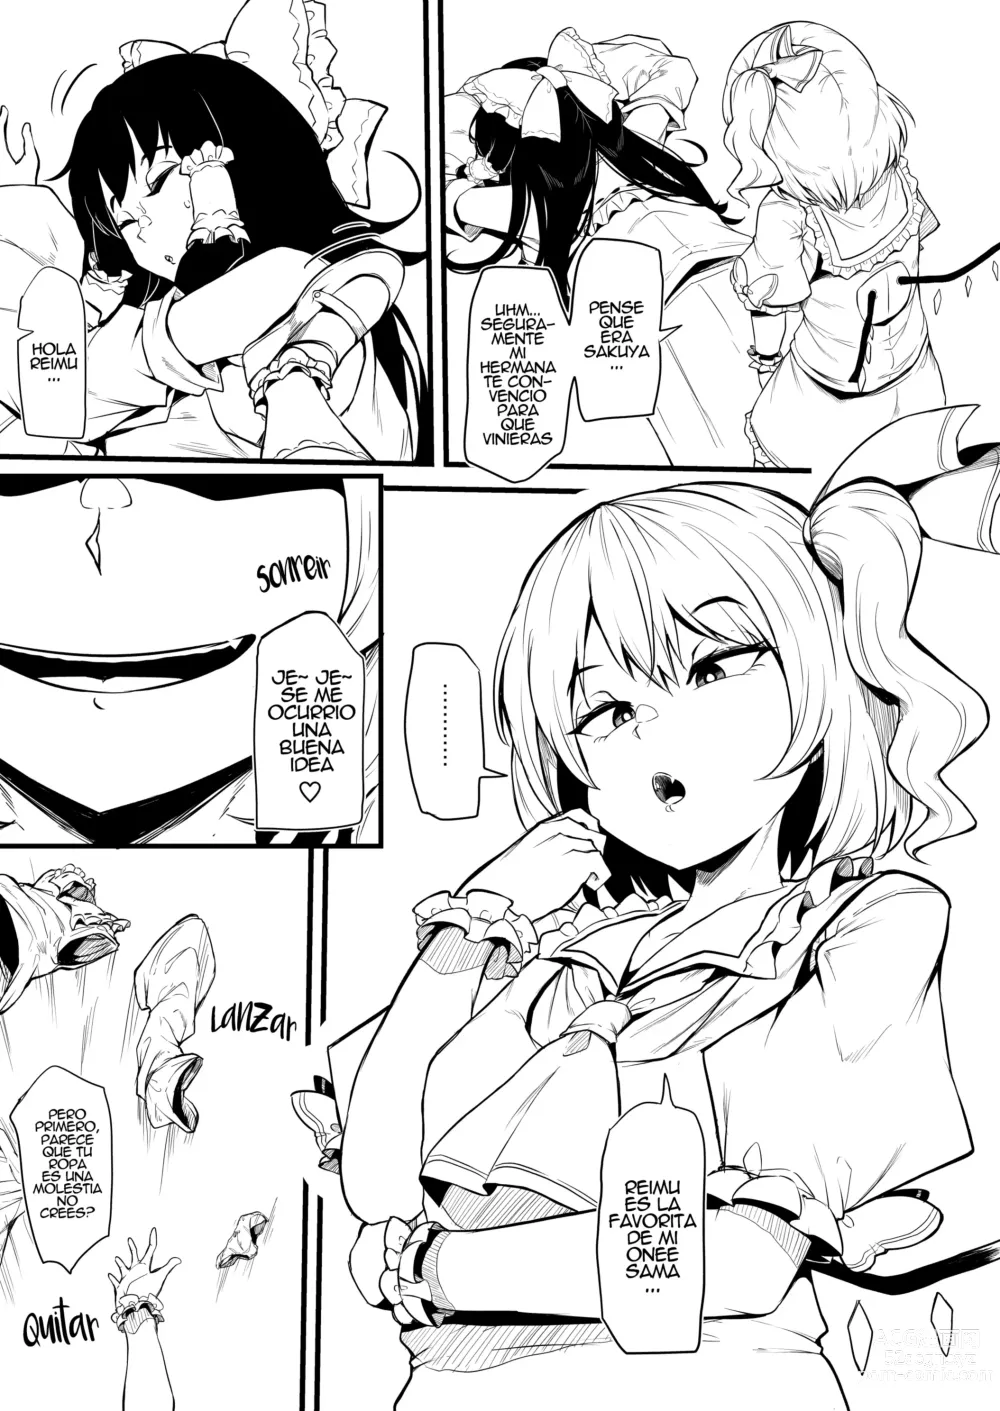 Page 6 of doujinshi Futanari Furan-chan ga Reimu o Chokyo Suru Manga